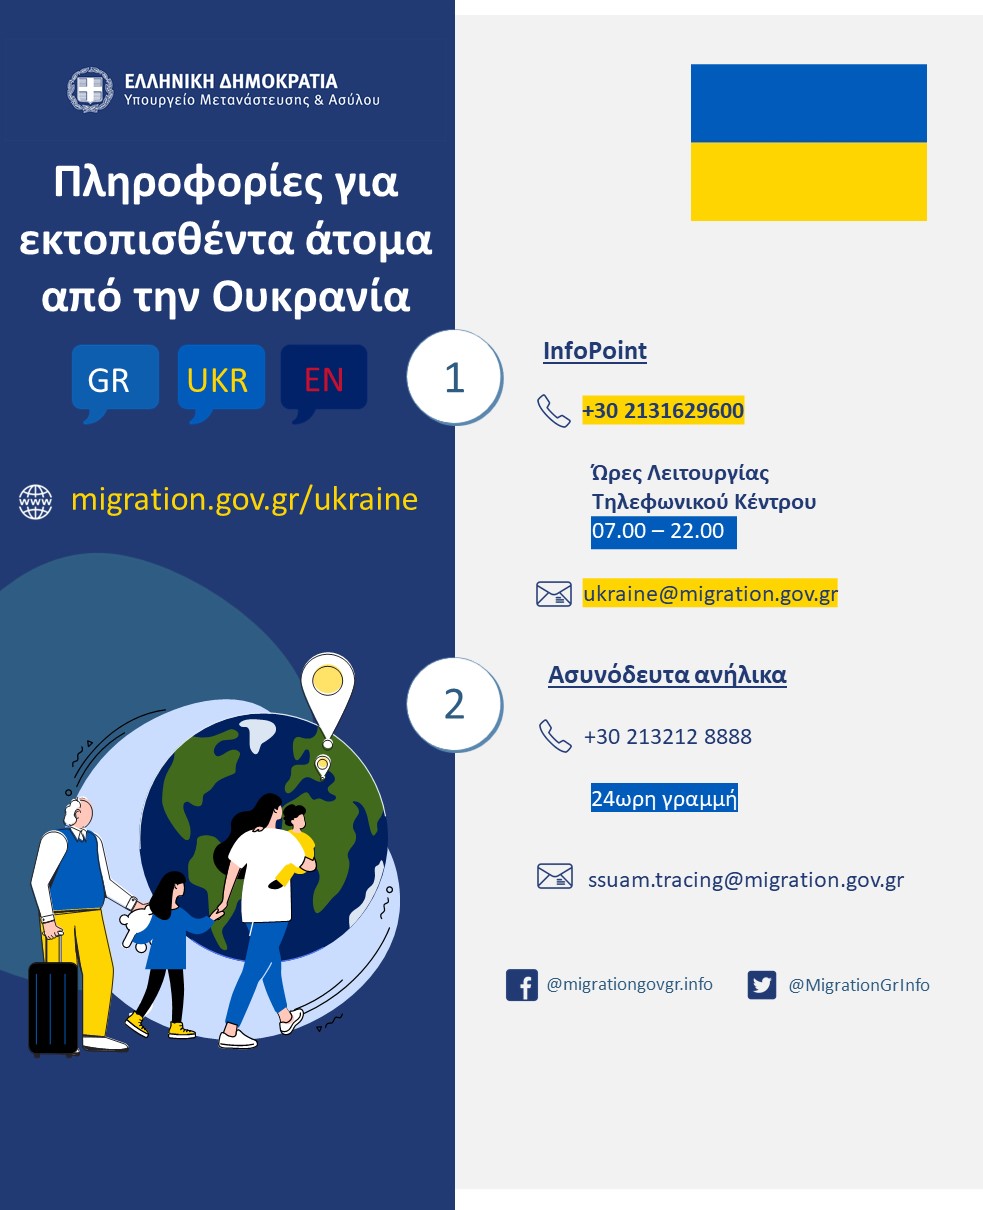 Πληροφορίες για τους Ουκρανούς πρόσφυγες